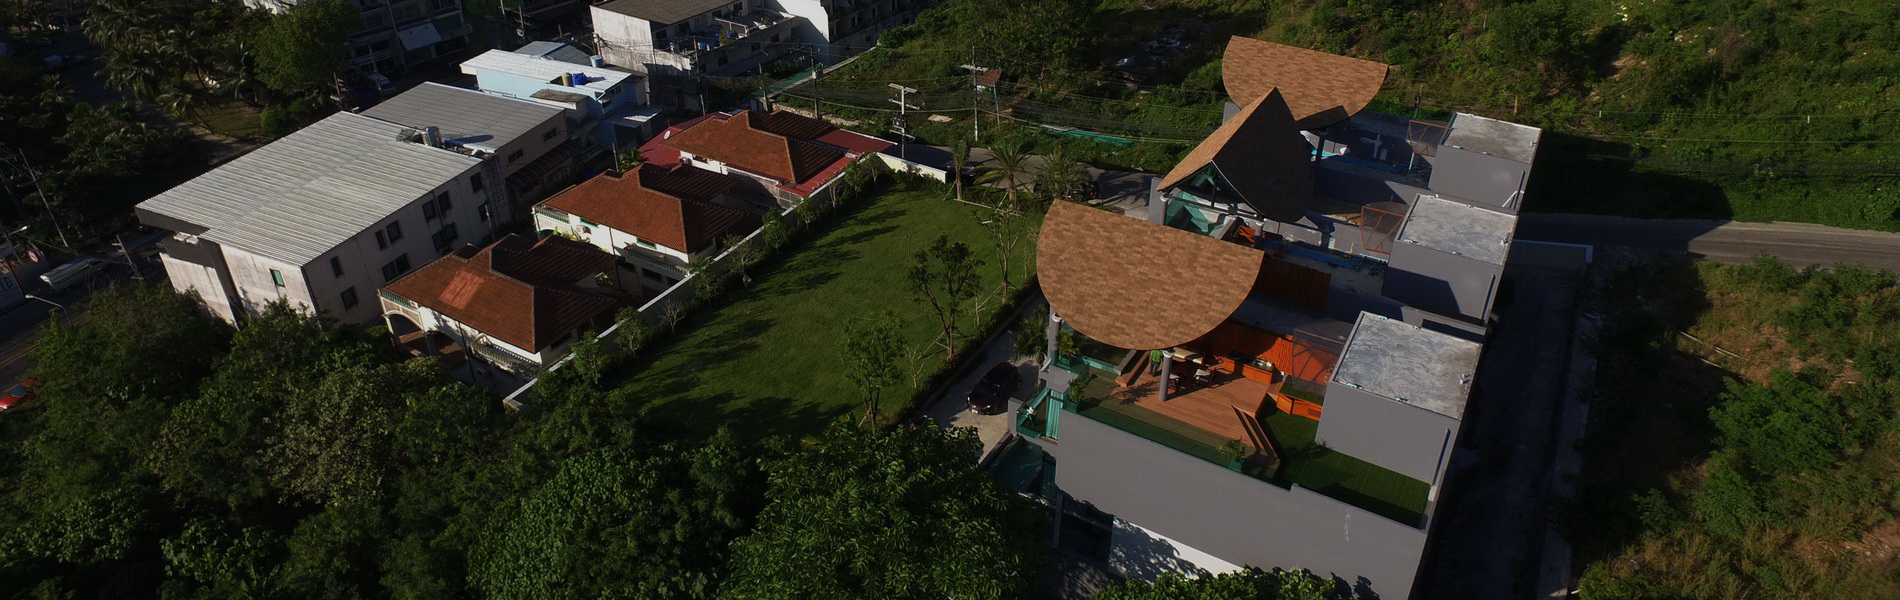 Bukit pool villas - View